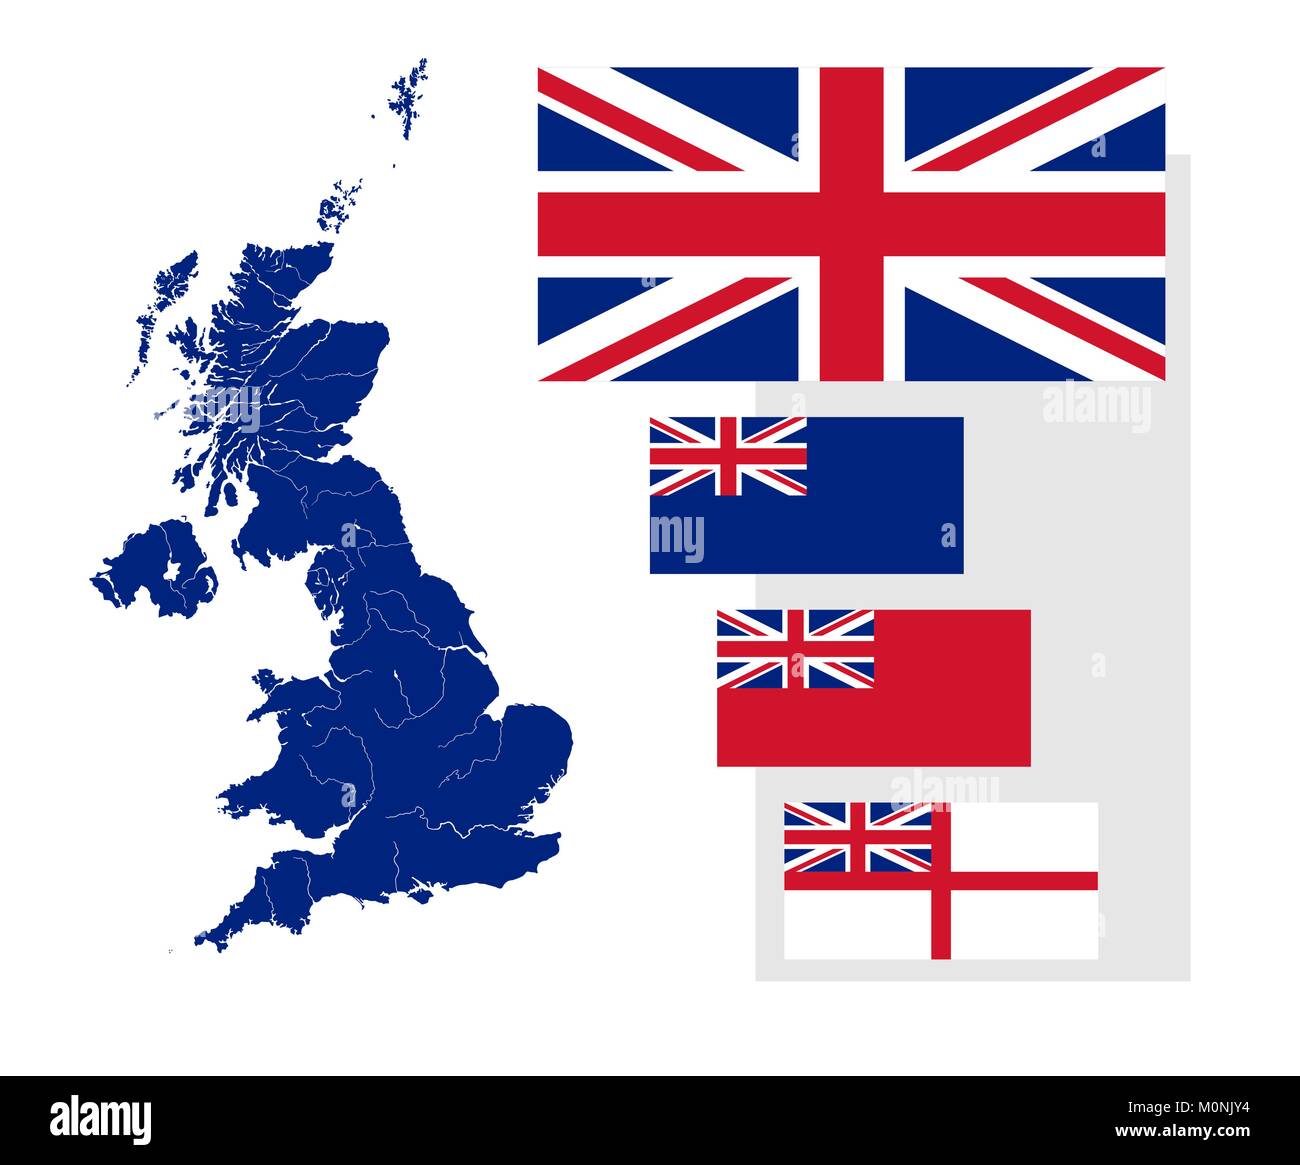 Karte von Großbritannien mit Flüssen und vier britischen Flaggen - Flagge, Bundesland, der Stern, der Stern und Naval Ensign. Flags hat die richtige Gestaltung, Stock Vektor